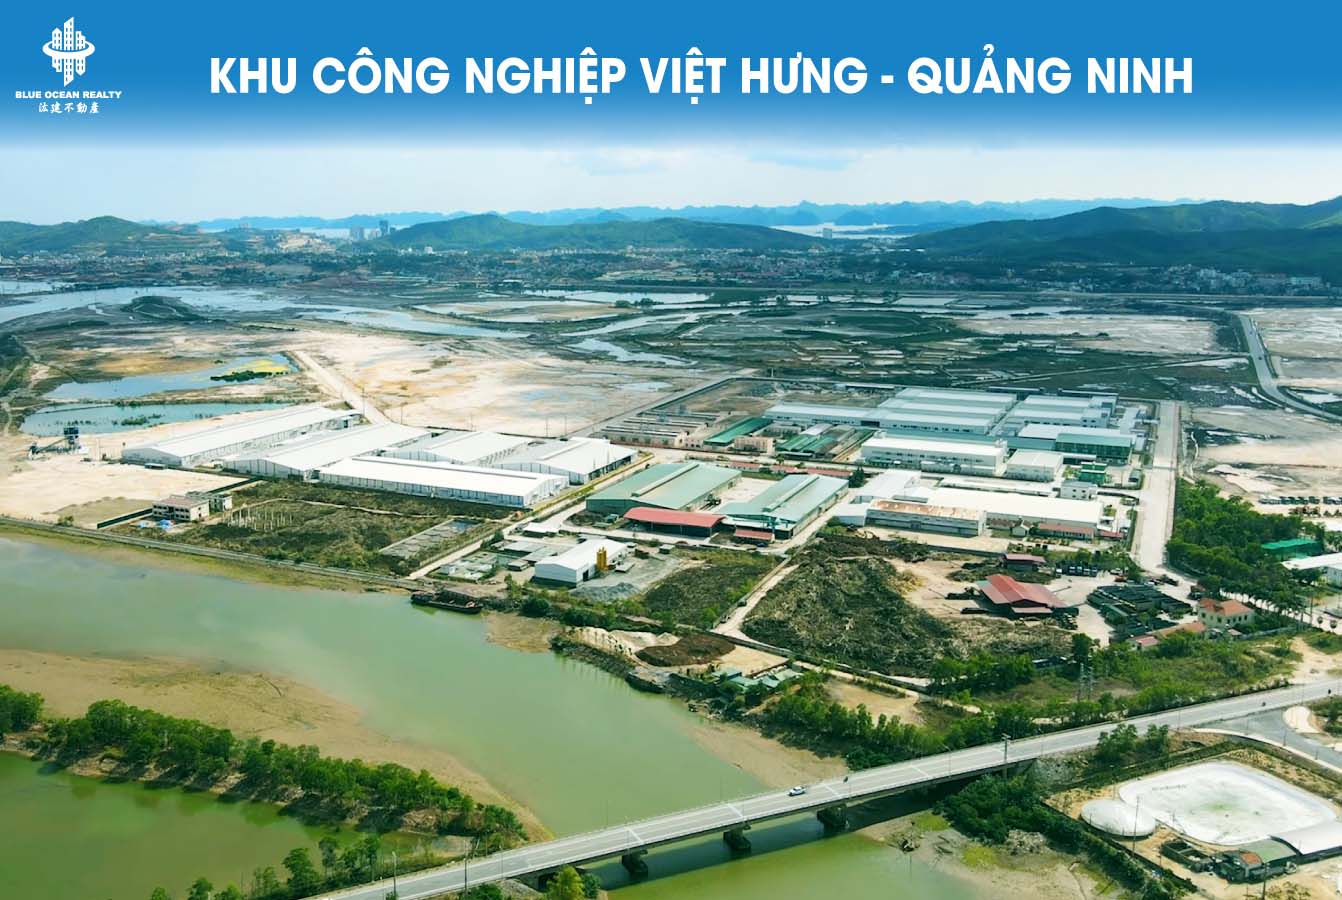 Khu công nghiệp (KCN) Việt Hưng Quảng Ninh